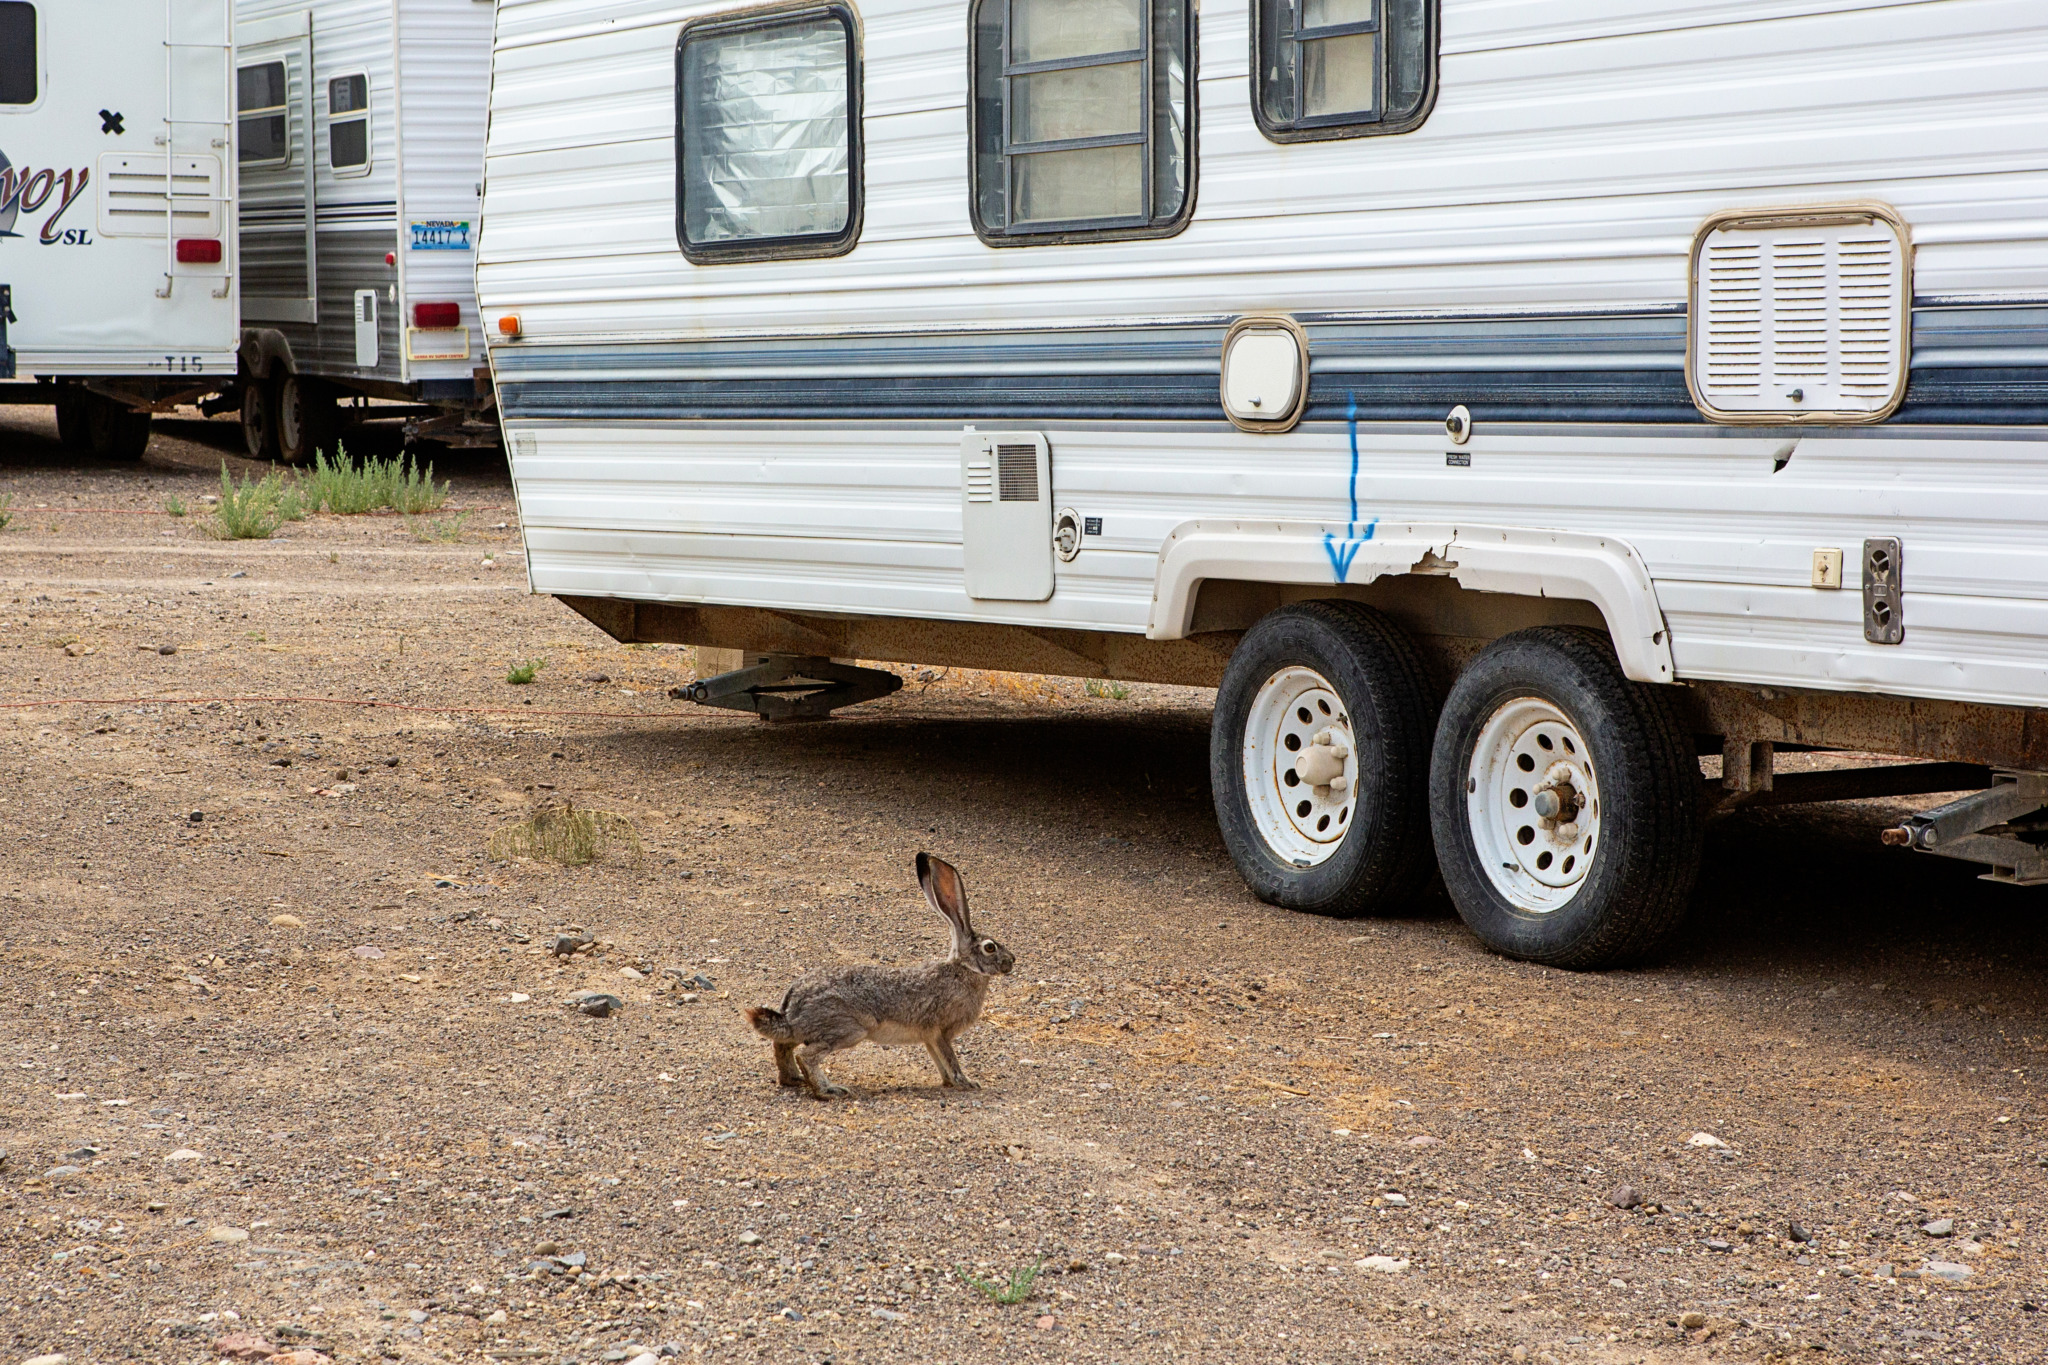 A rabbit near a trailer